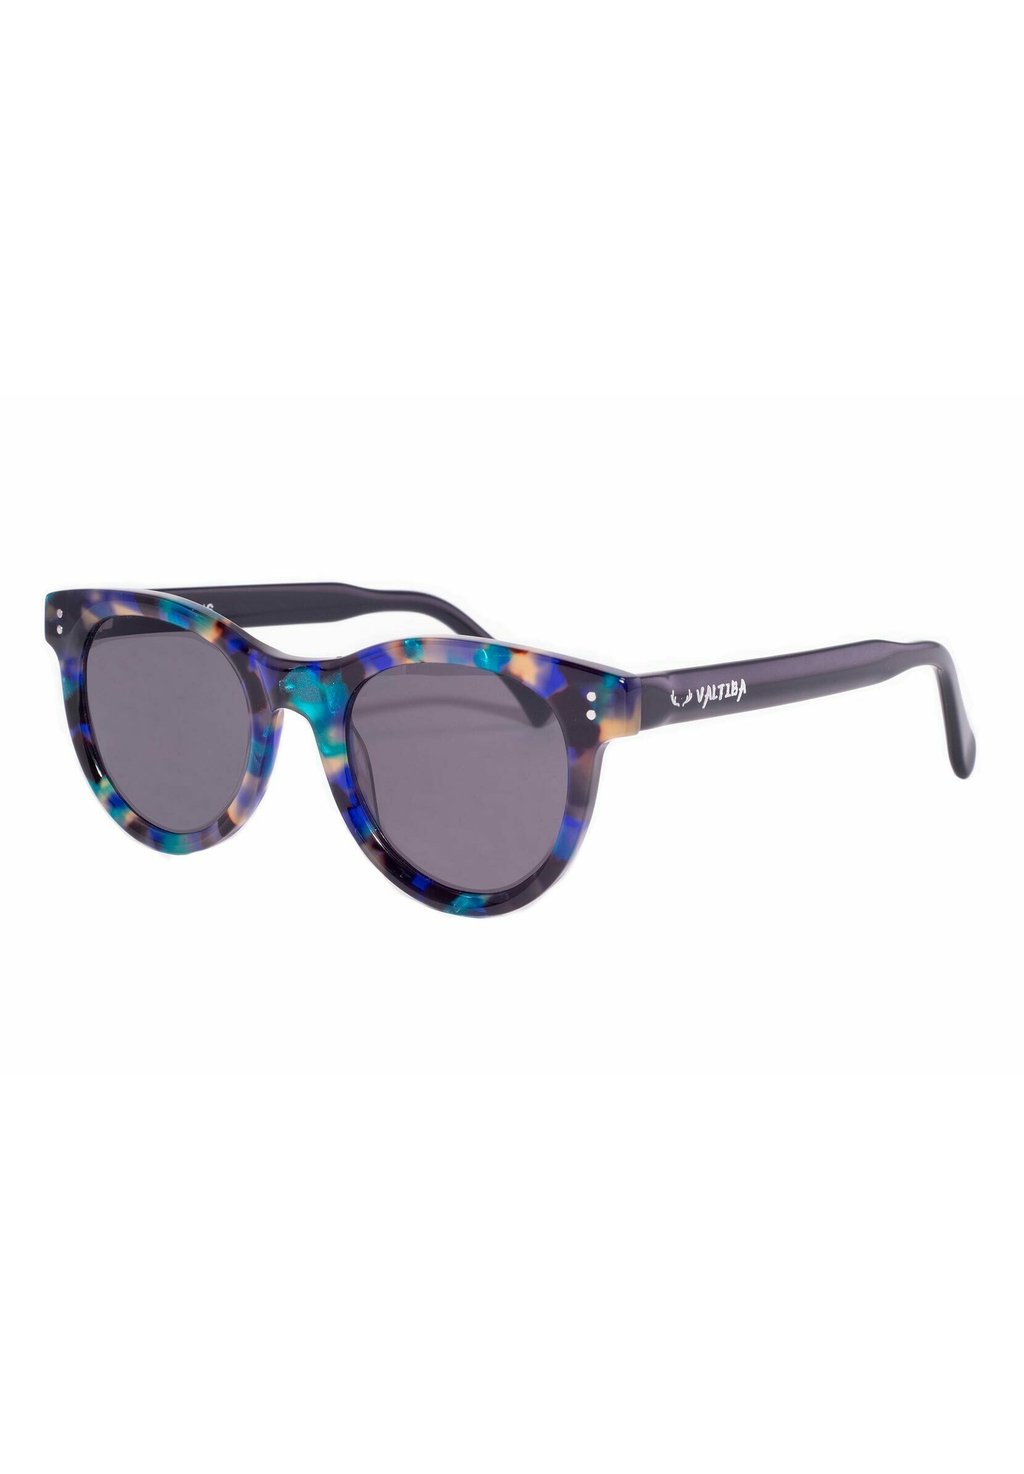 Солнцезащитные очки VENUS Valtiba, голубовато-серый